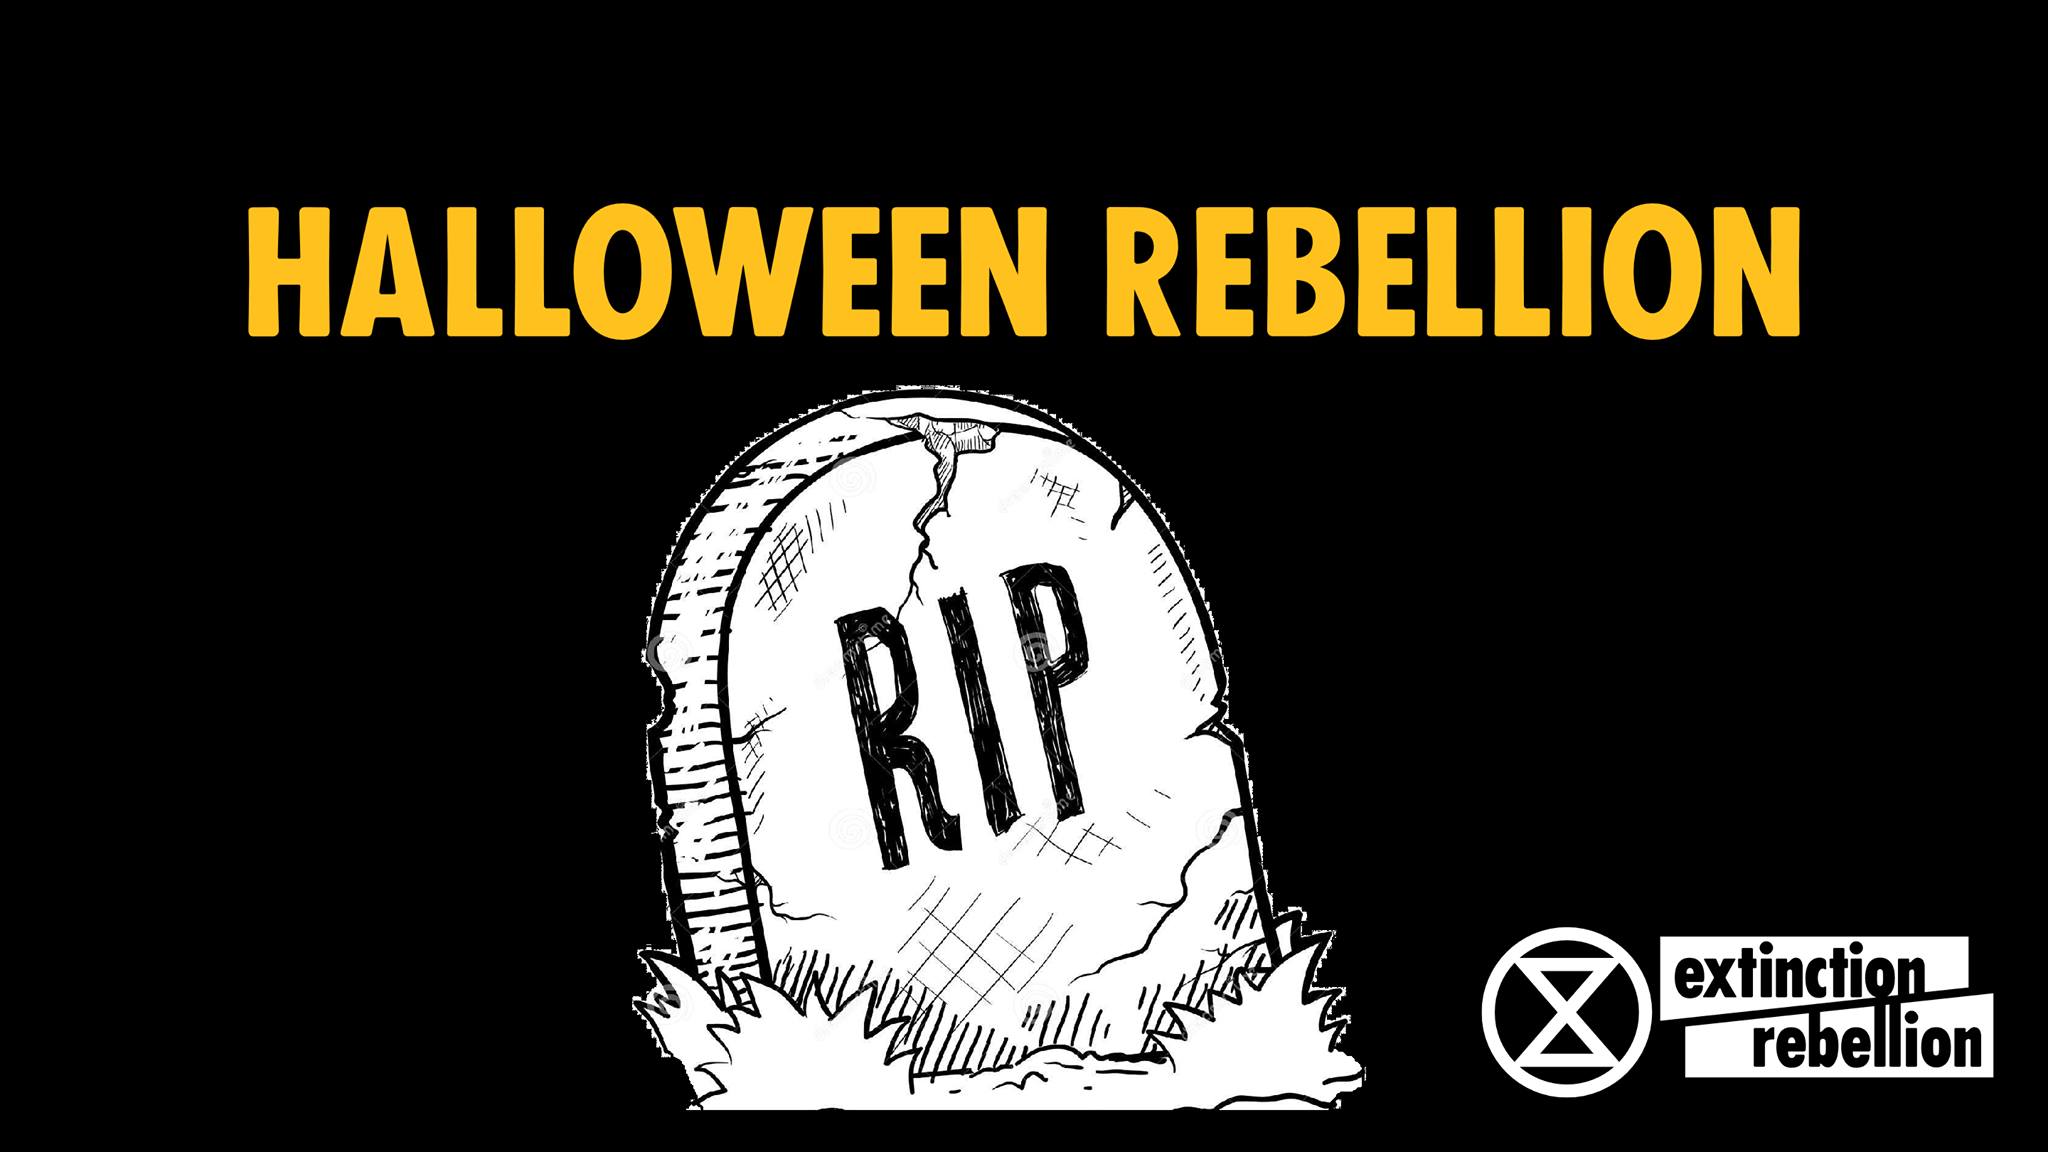 Halloween Rebellion (Auckland) - Extinction Rebellion